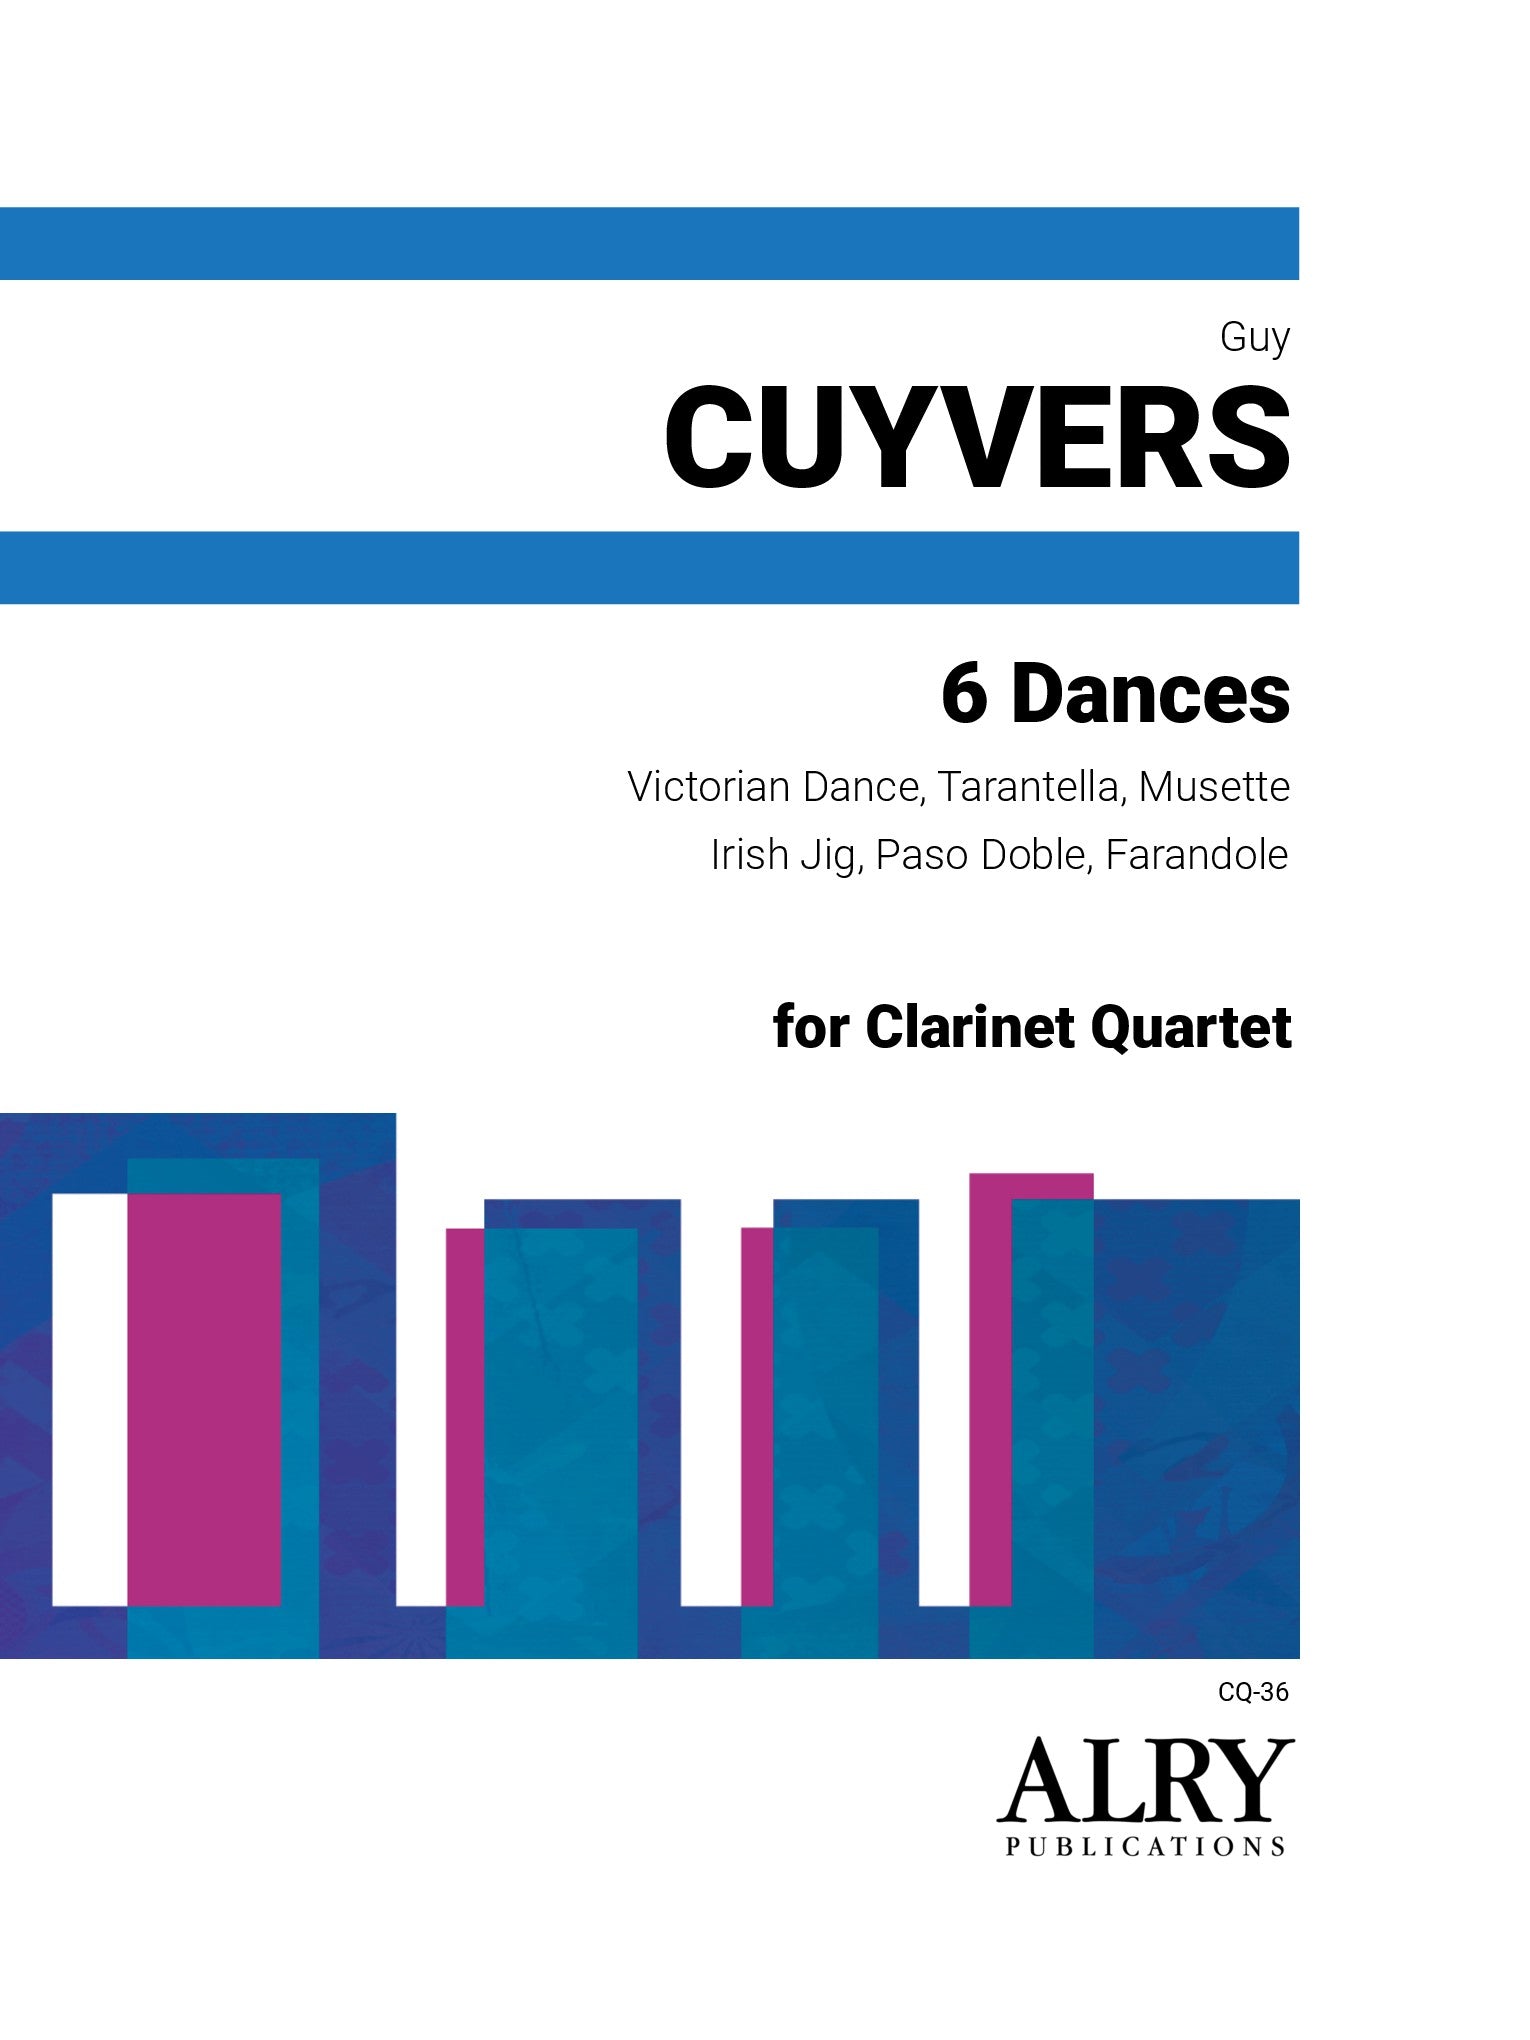 Cuyvers - 6 Dances for Clarinet Quartet